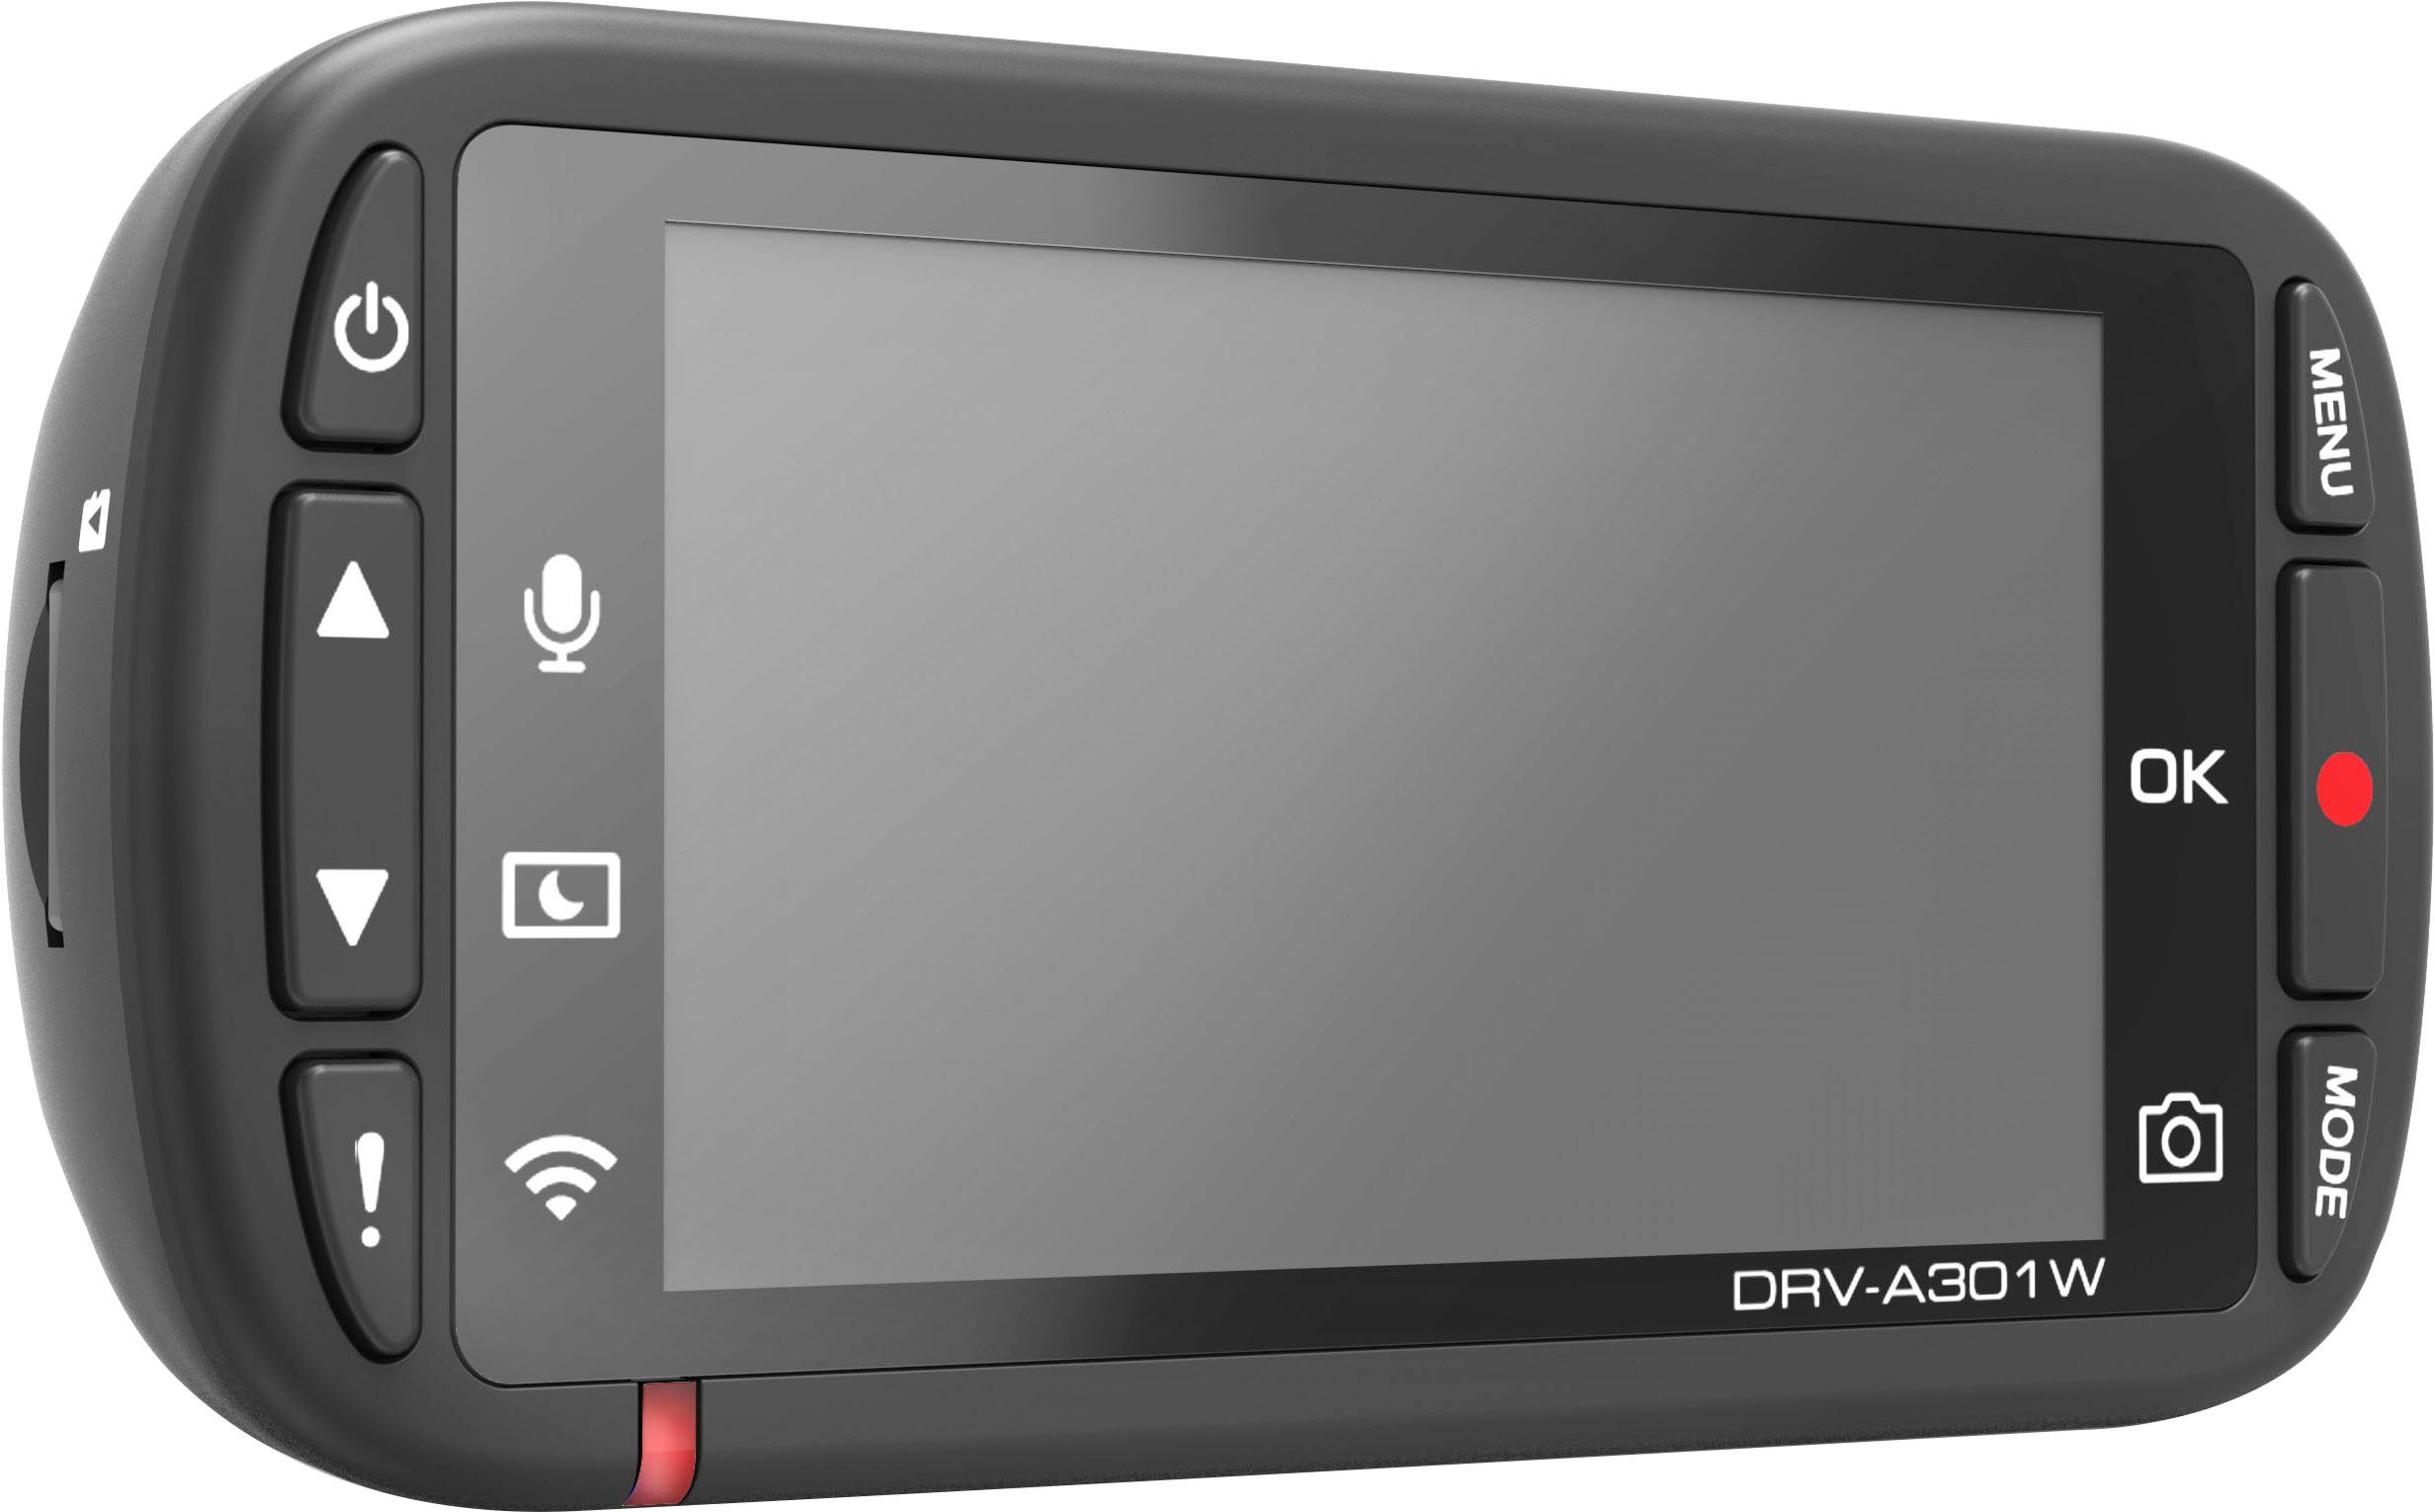 WLAN DRV-A301W Kenwood HD, Dashcam (Full (Wi-Fi)